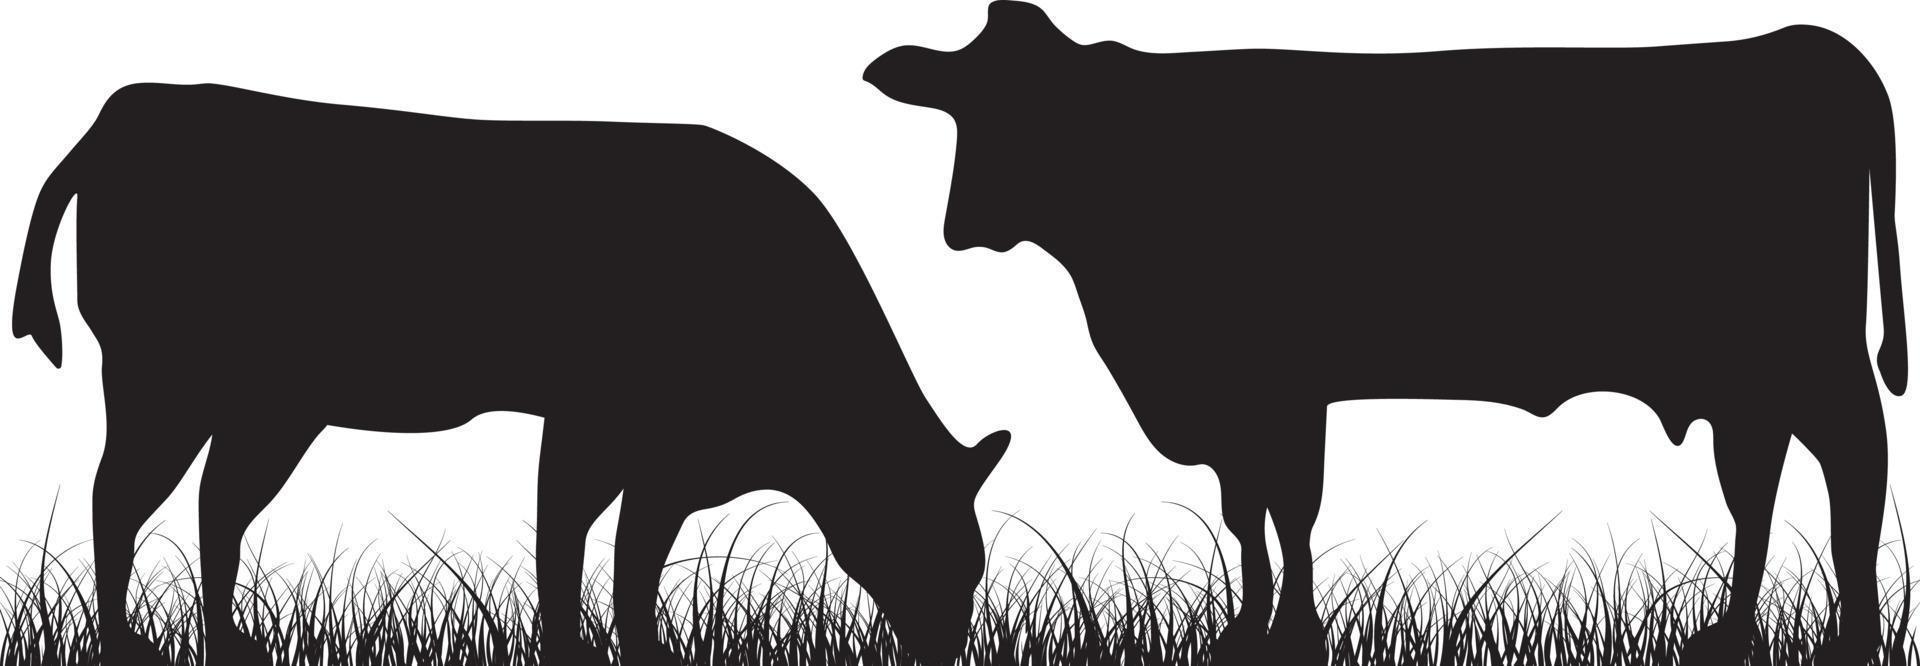 ko och gräsmark ranch siluett vektor